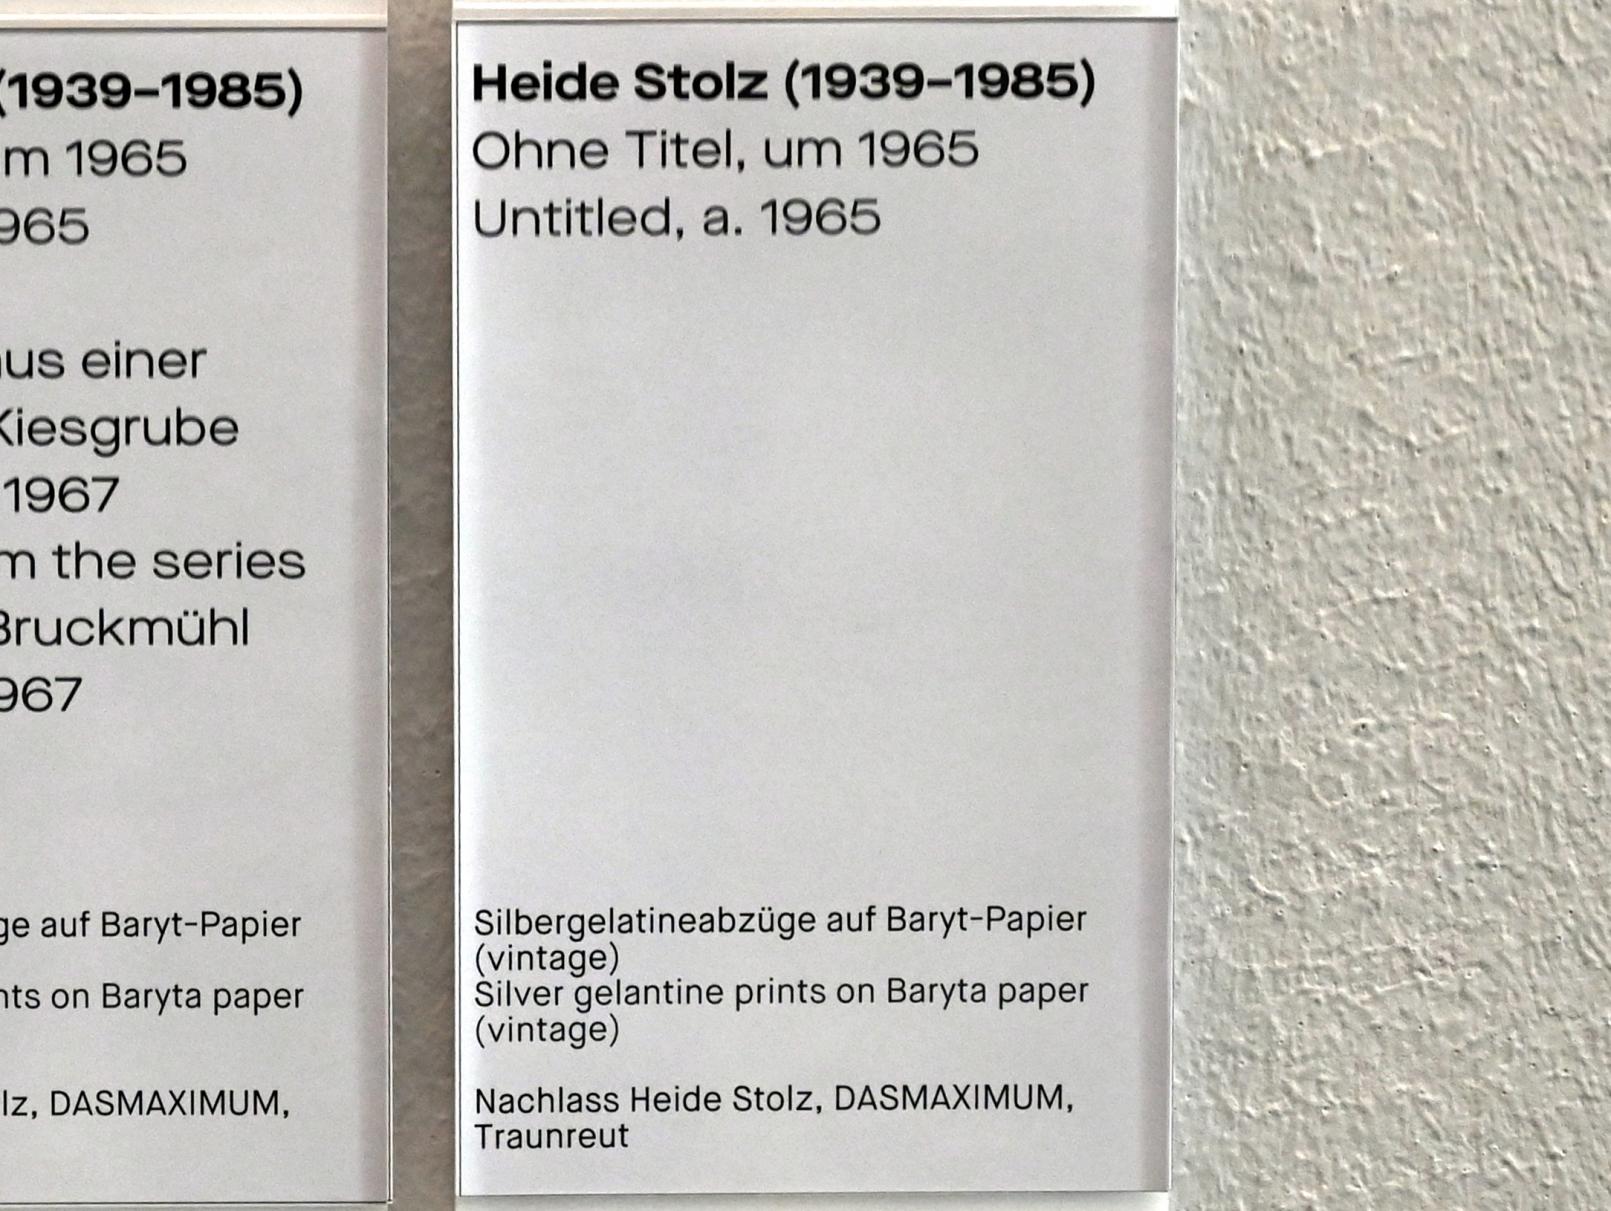 Heide Stolz (1960–1969), Ohne Titel, Chemnitz, Museum Gunzenhauser, Saal 1.10 - Uwe Lausen und Heide Stolz, um 1965, Bild 2/2